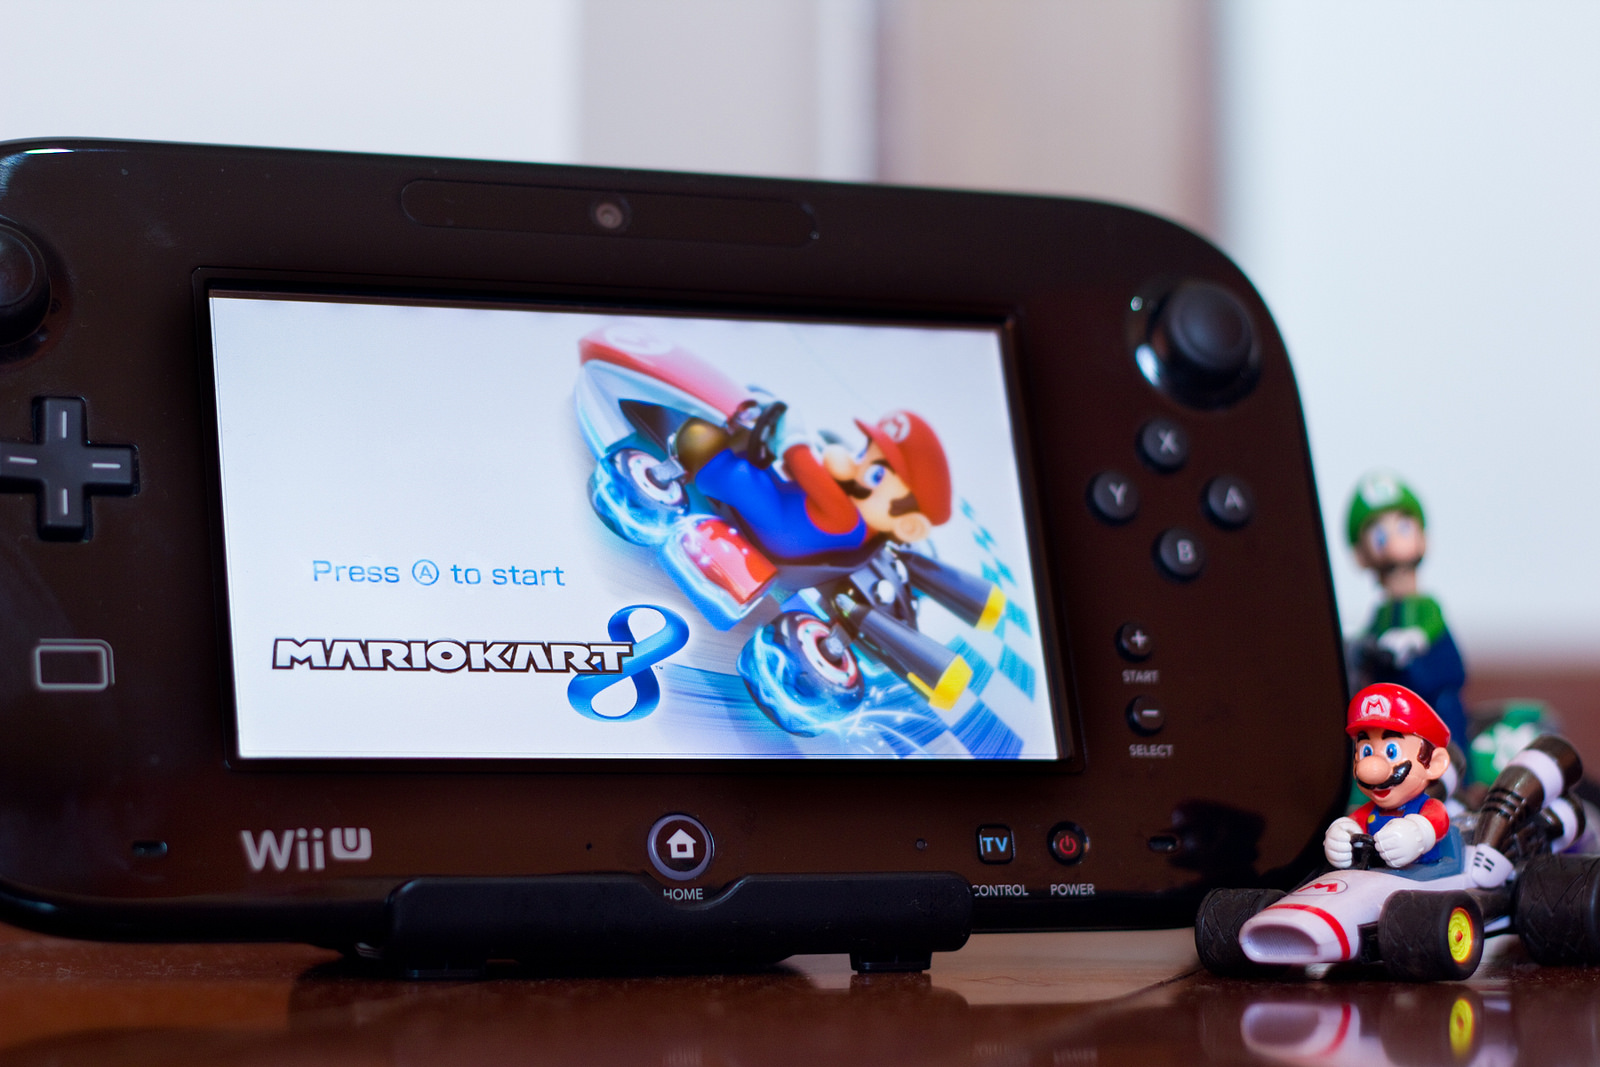 Cemu Wii U emulator - Download